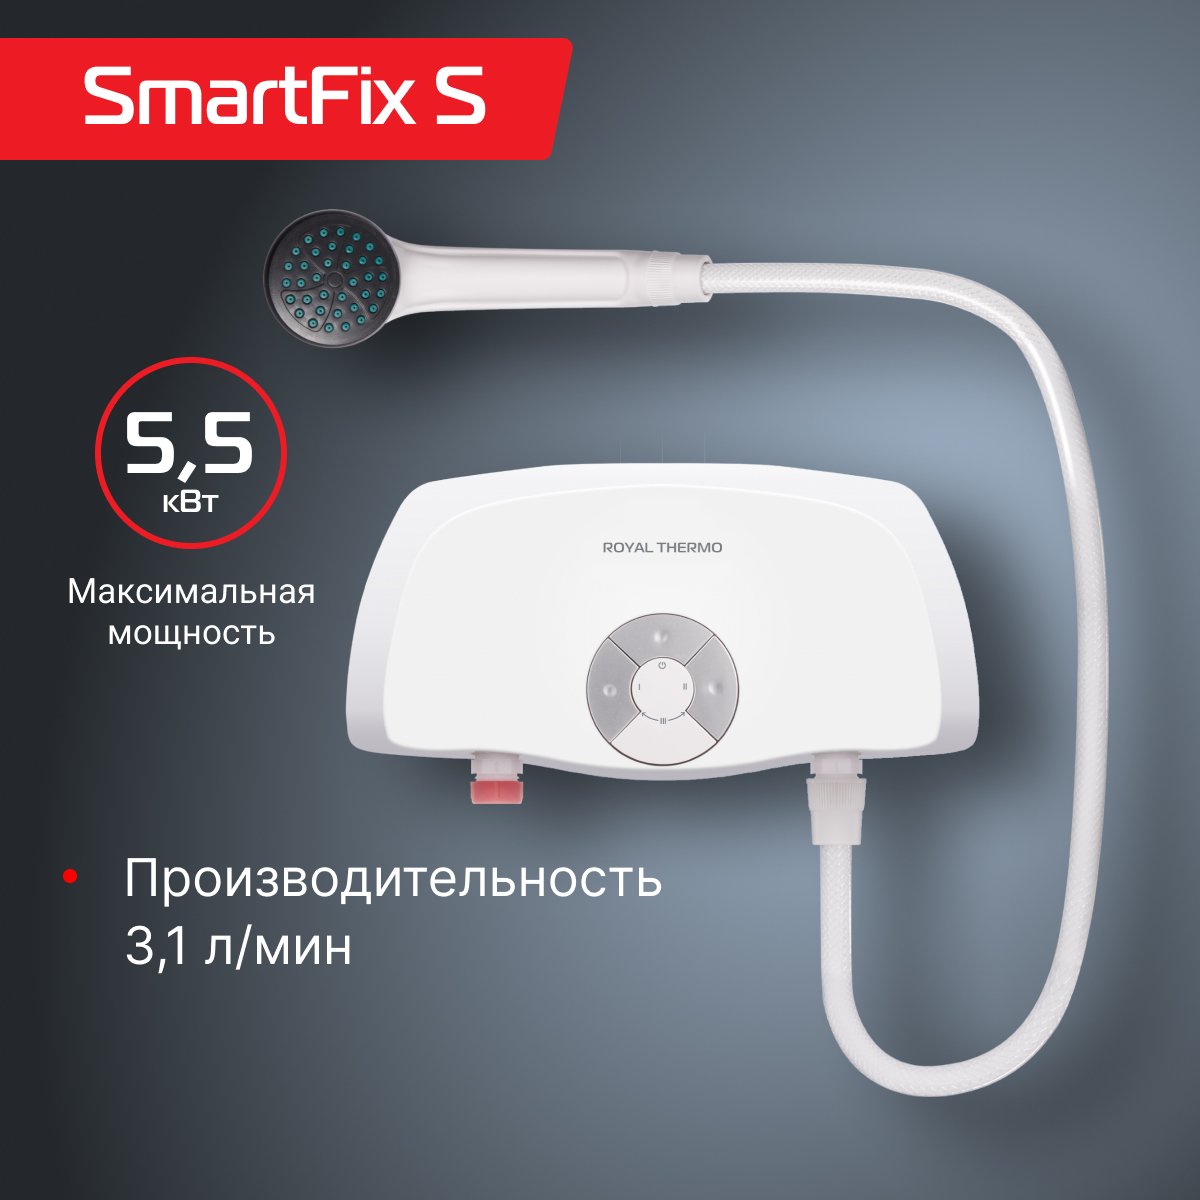 Водонагреватель проточный Royal Thermo Smartfix S (5,5 kW) - душ - купить в Москве, цены на Мегамаркет | 600015269926